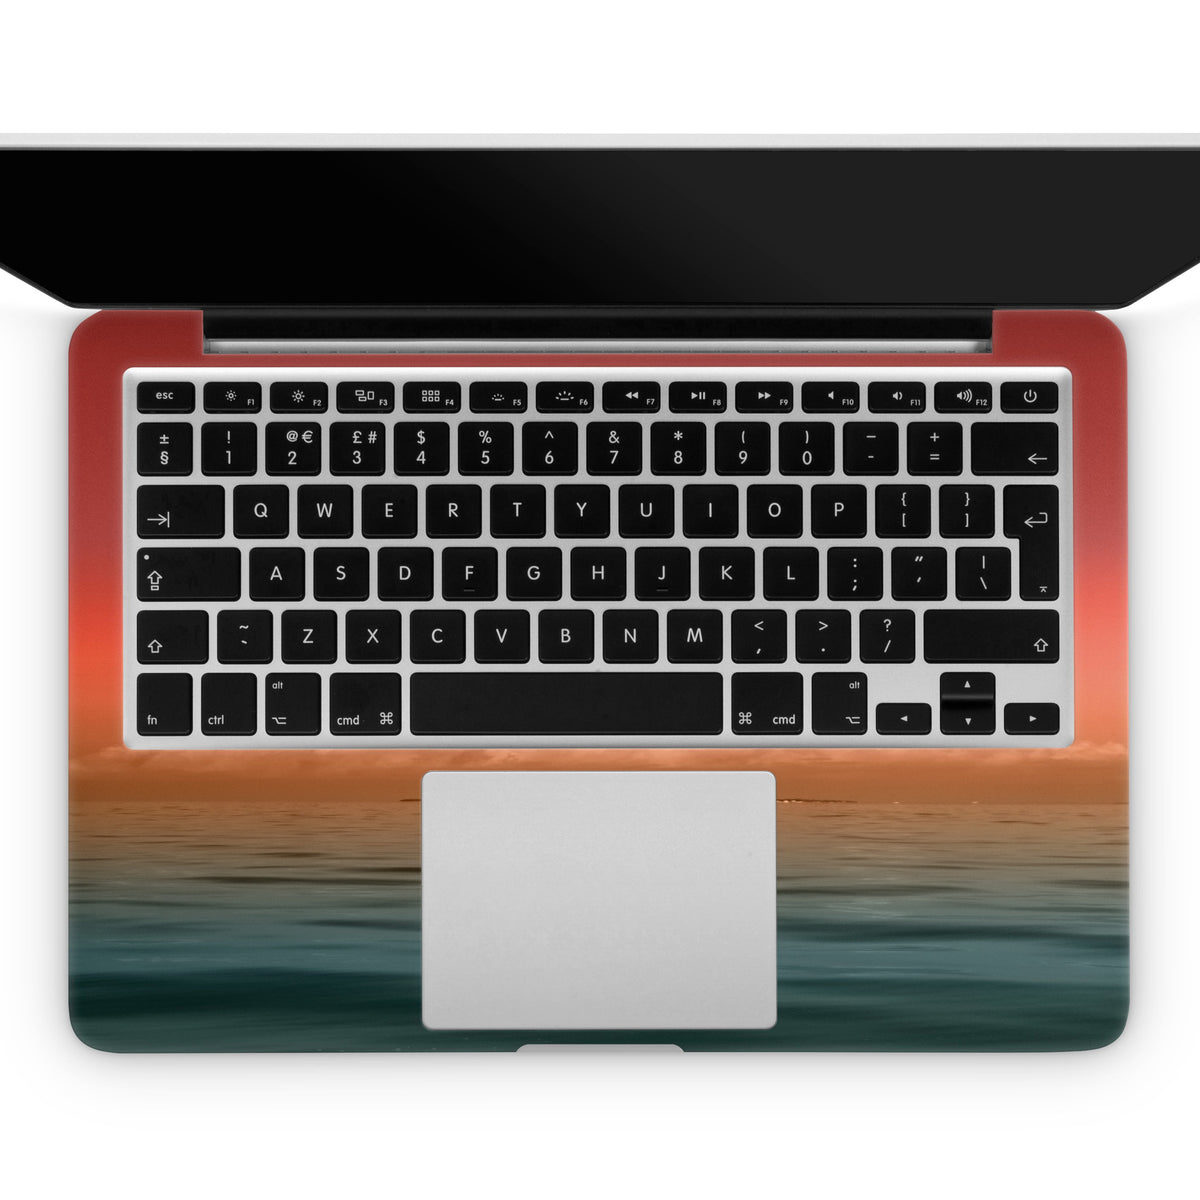 Dawn (MacBook Skin)